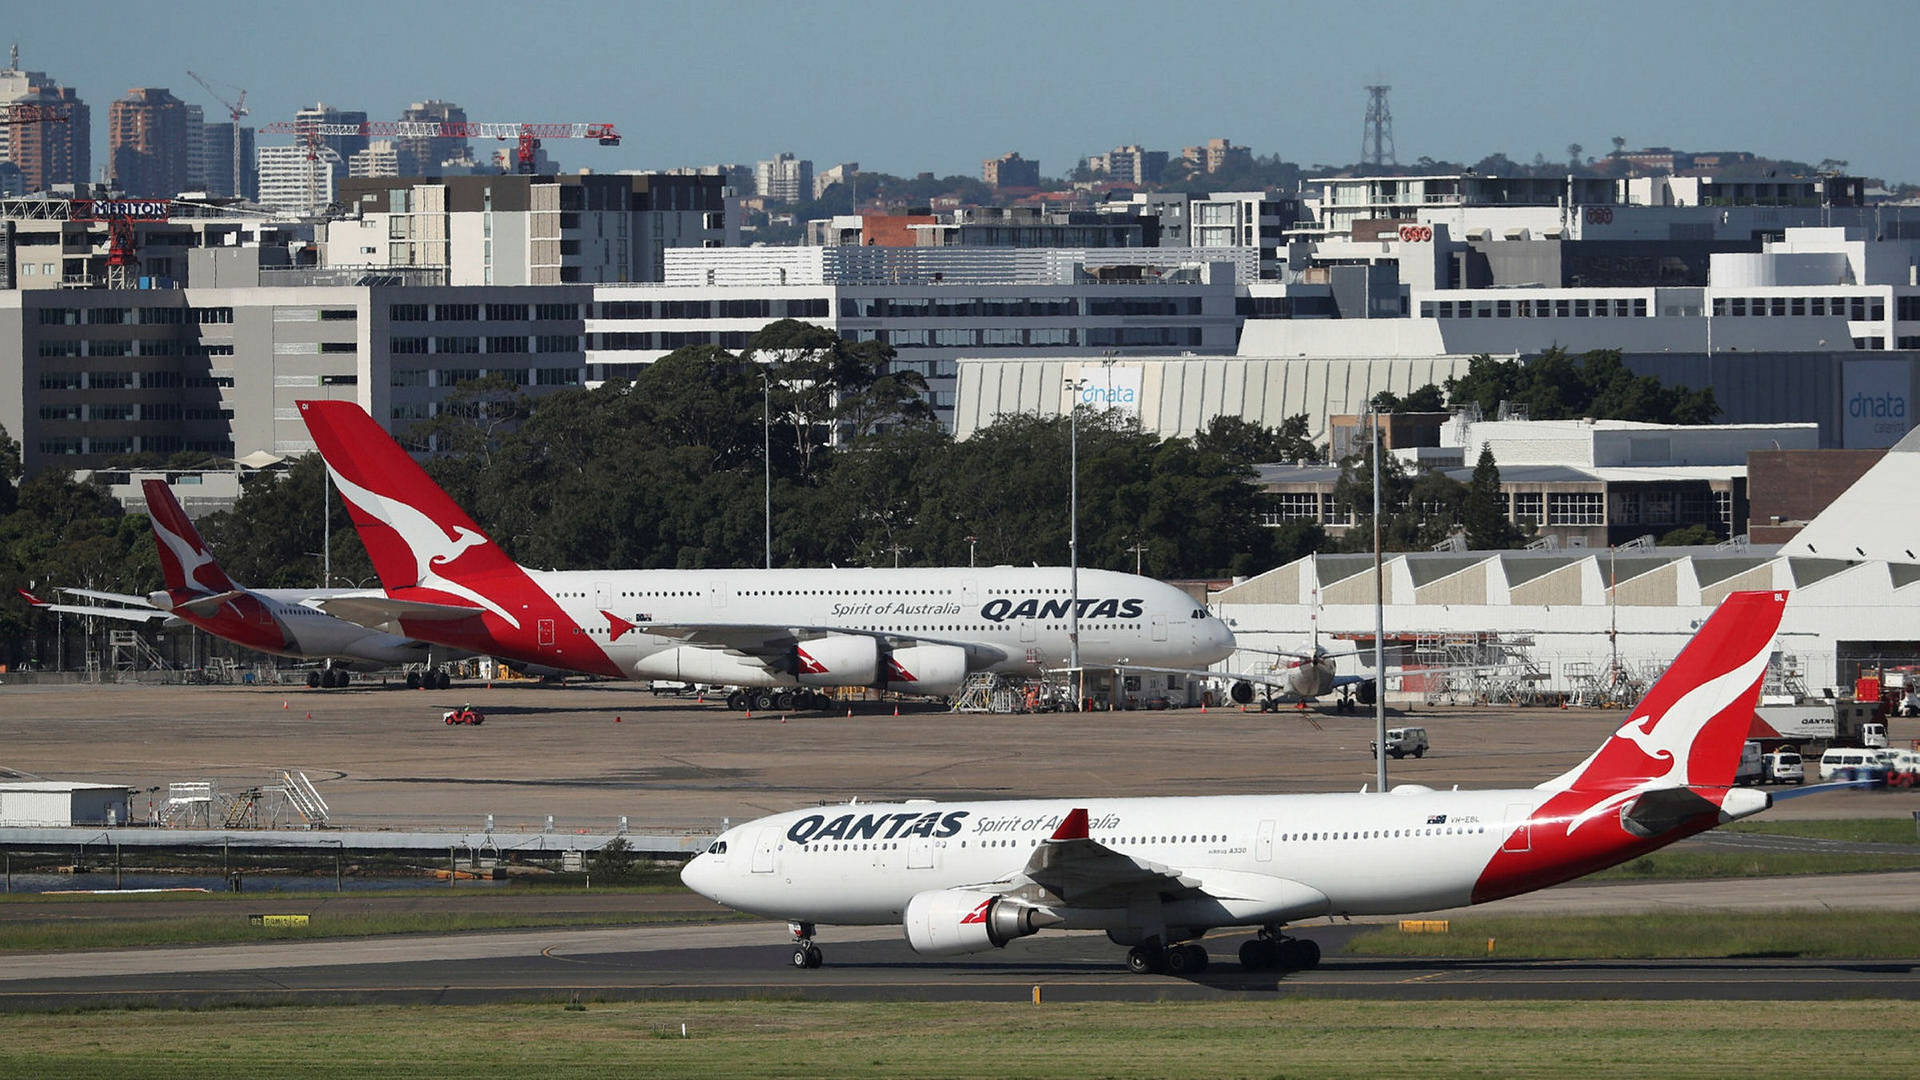 Qantasairbusplan Vid Det Livliga Flygplatsen. Wallpaper